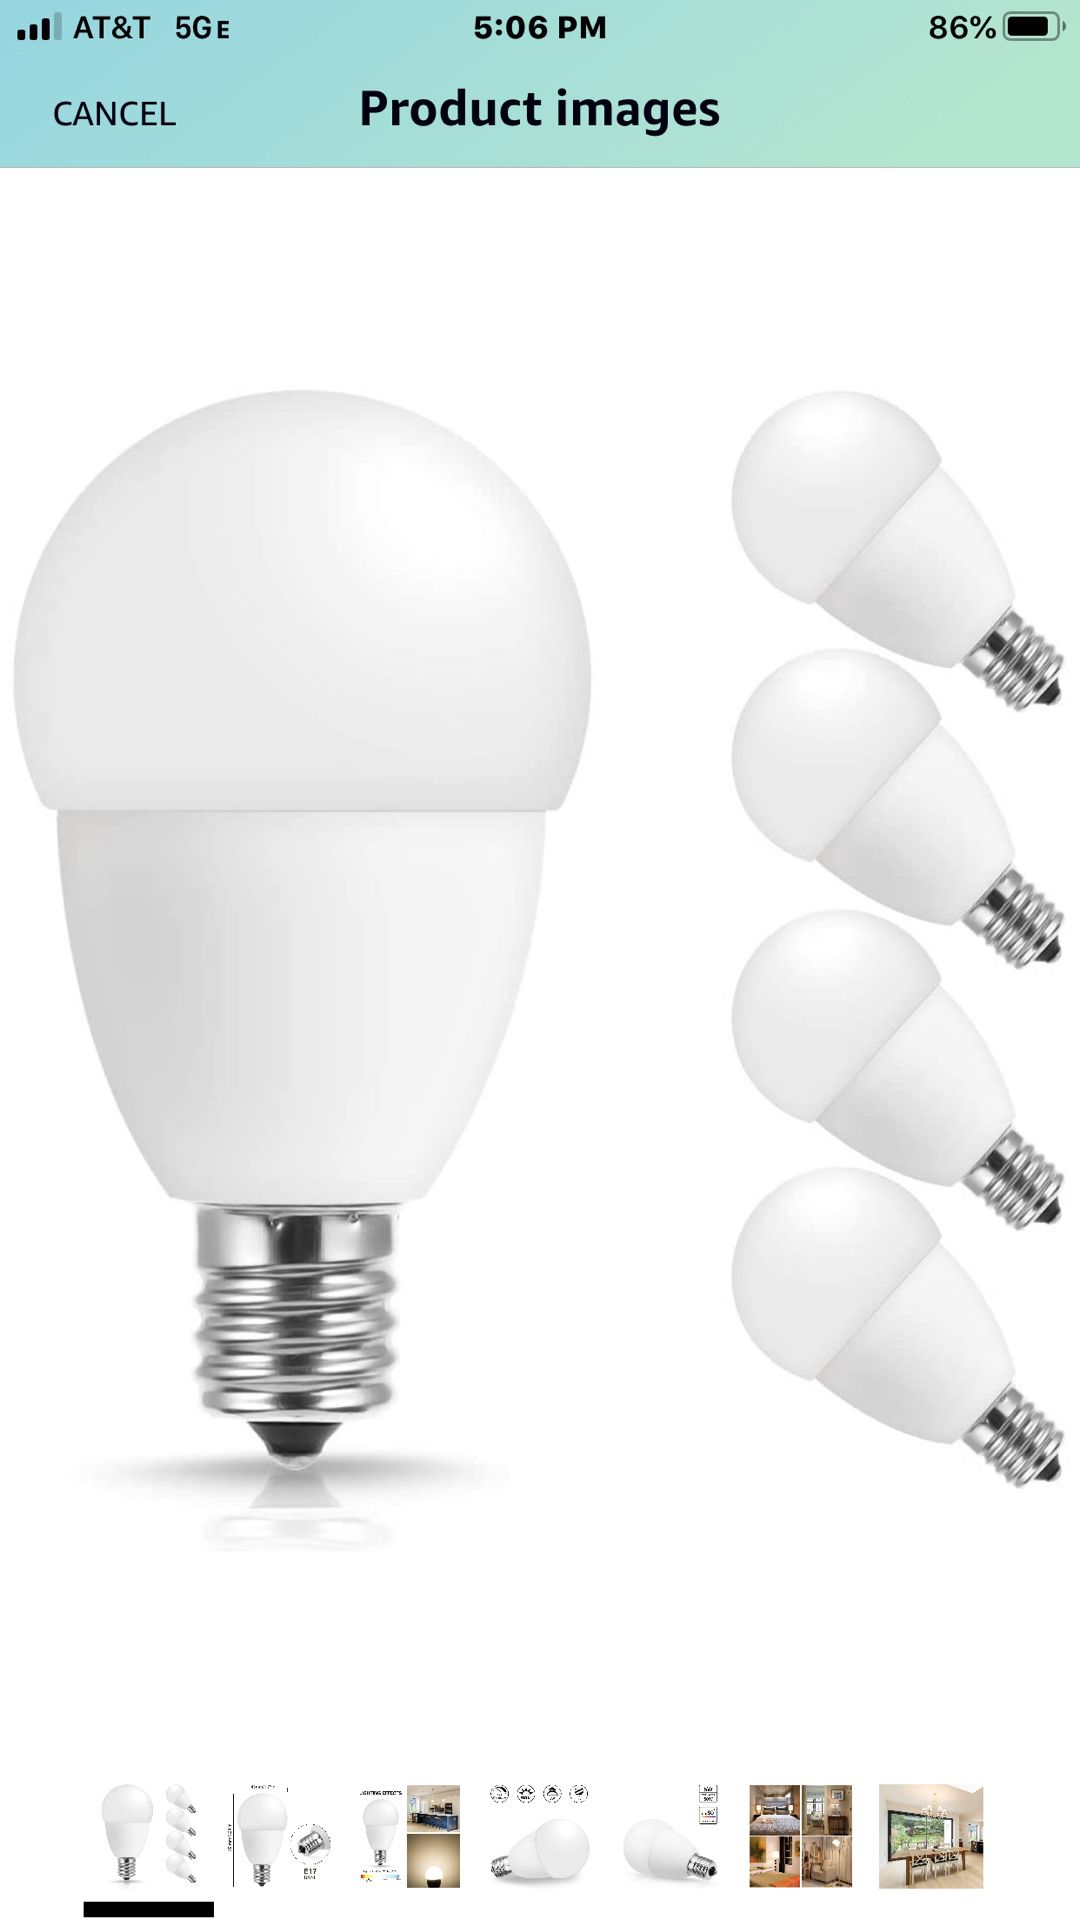 E17 LED Bulb, JandCase 5W Light Bulbs, 5000k Soft White, 550LM, 50W Equivalent Bulbs for Home Lighting, Ceiling Fan, Living Room, E17 Intermediate B